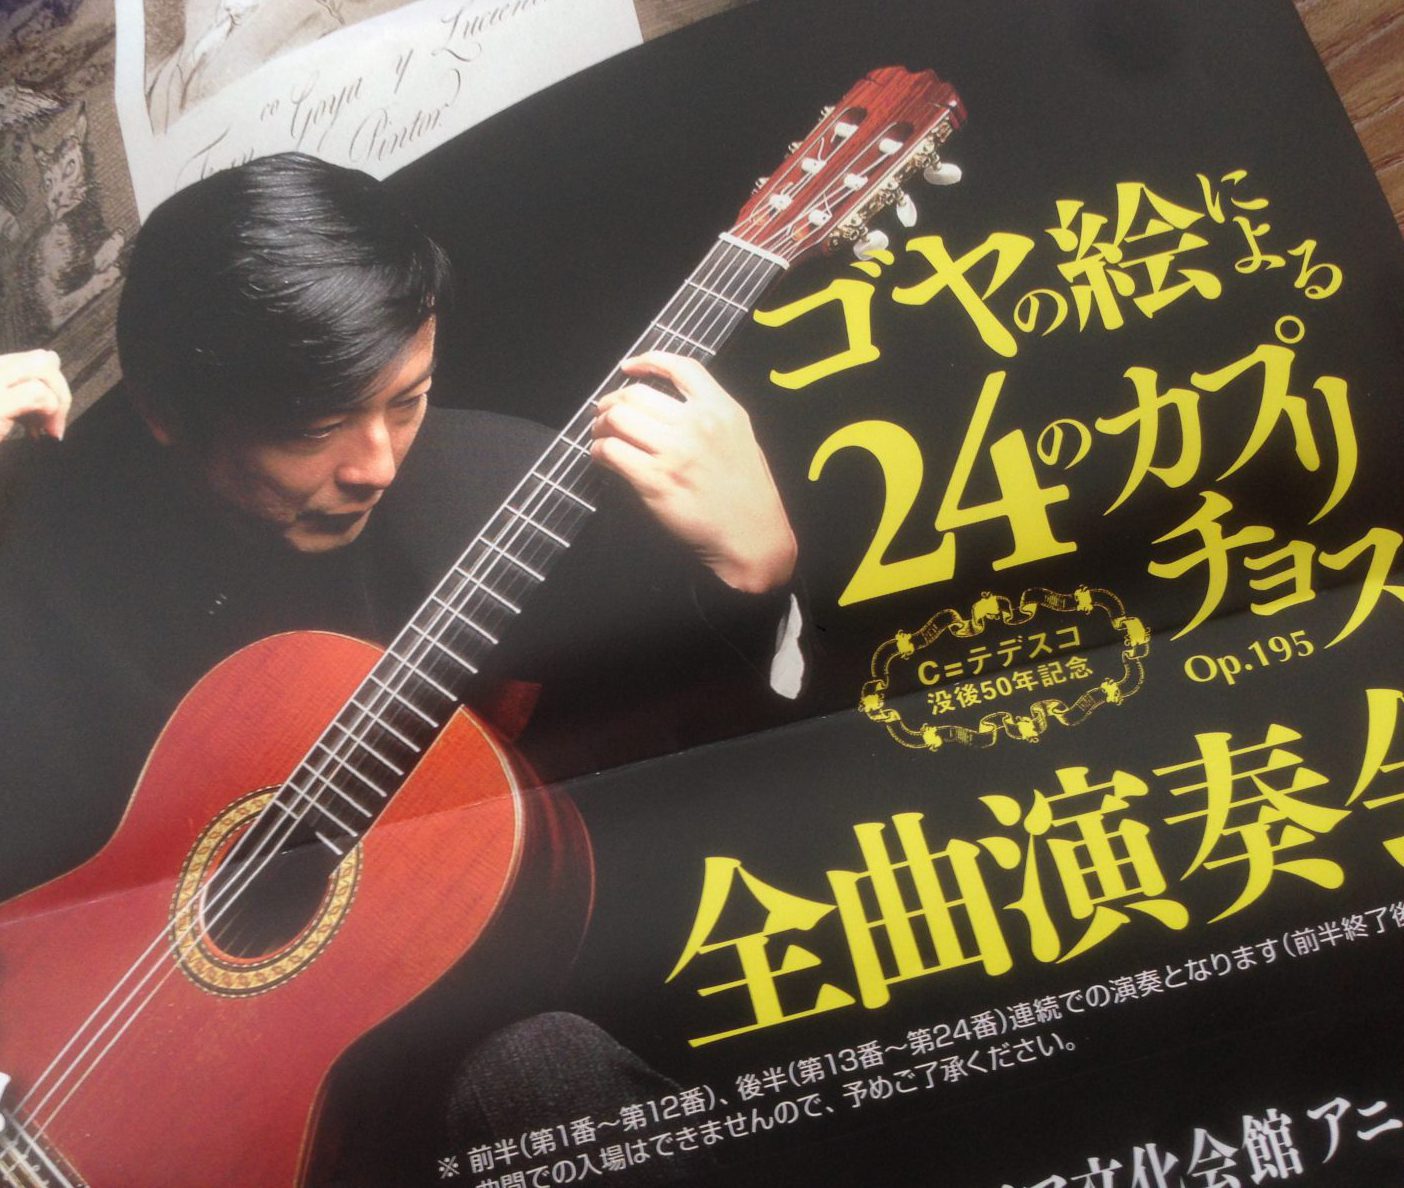 山下和仁ギターリサイタル ゴヤの絵による２４のカプリチョス全曲演奏会 Kohei Ito Blog